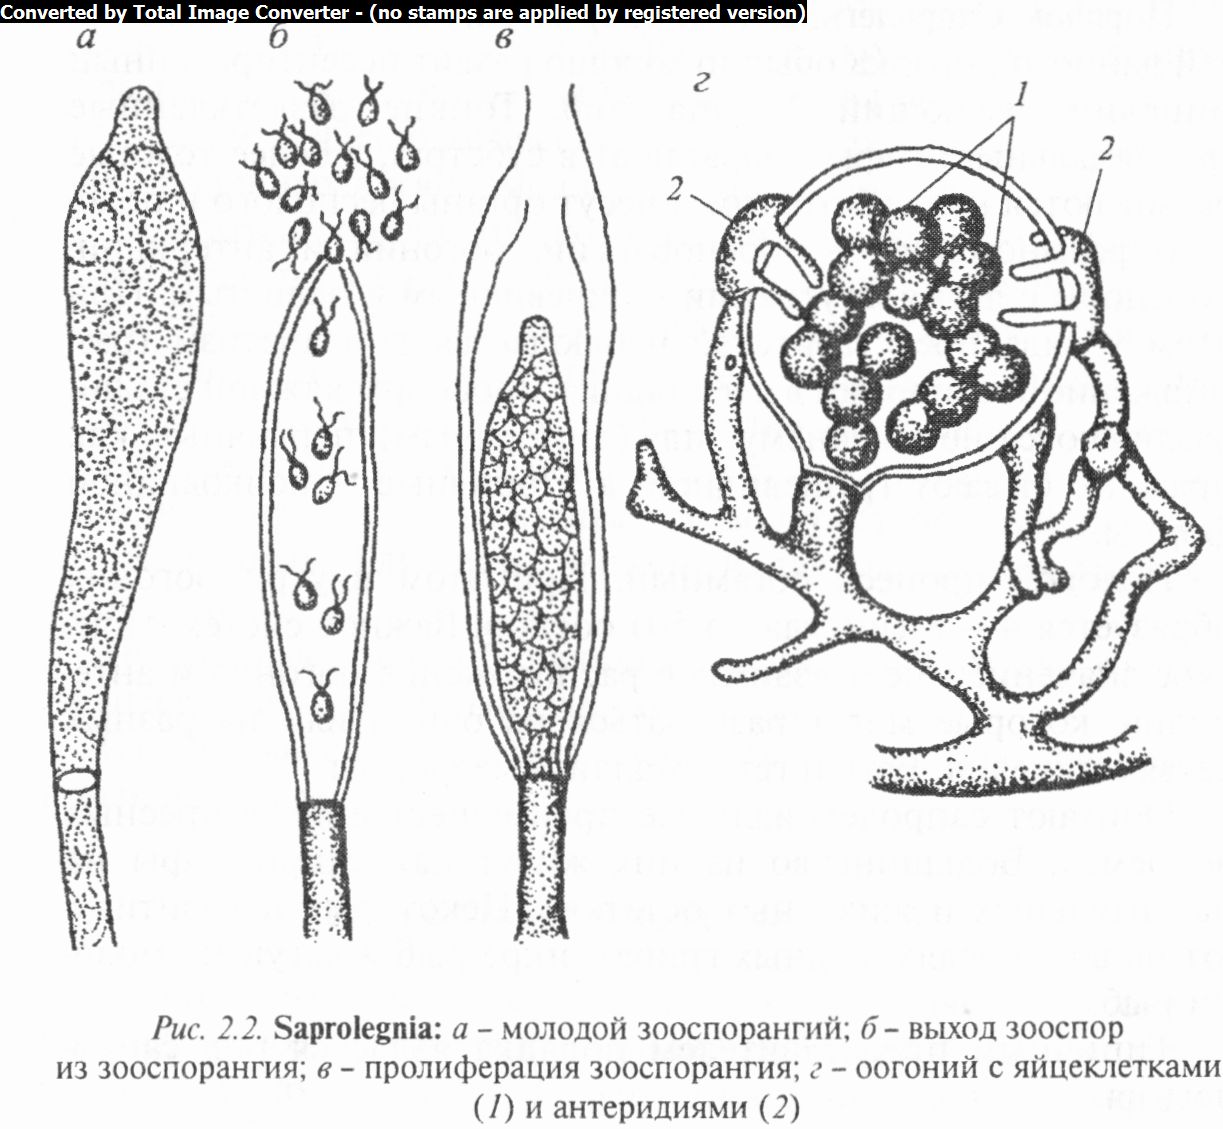 Флоккулярия соломенно-желтая (флоккулярия страминея, floccularia straminea): как выглядят грибы, где и как растут, съедобны или нет